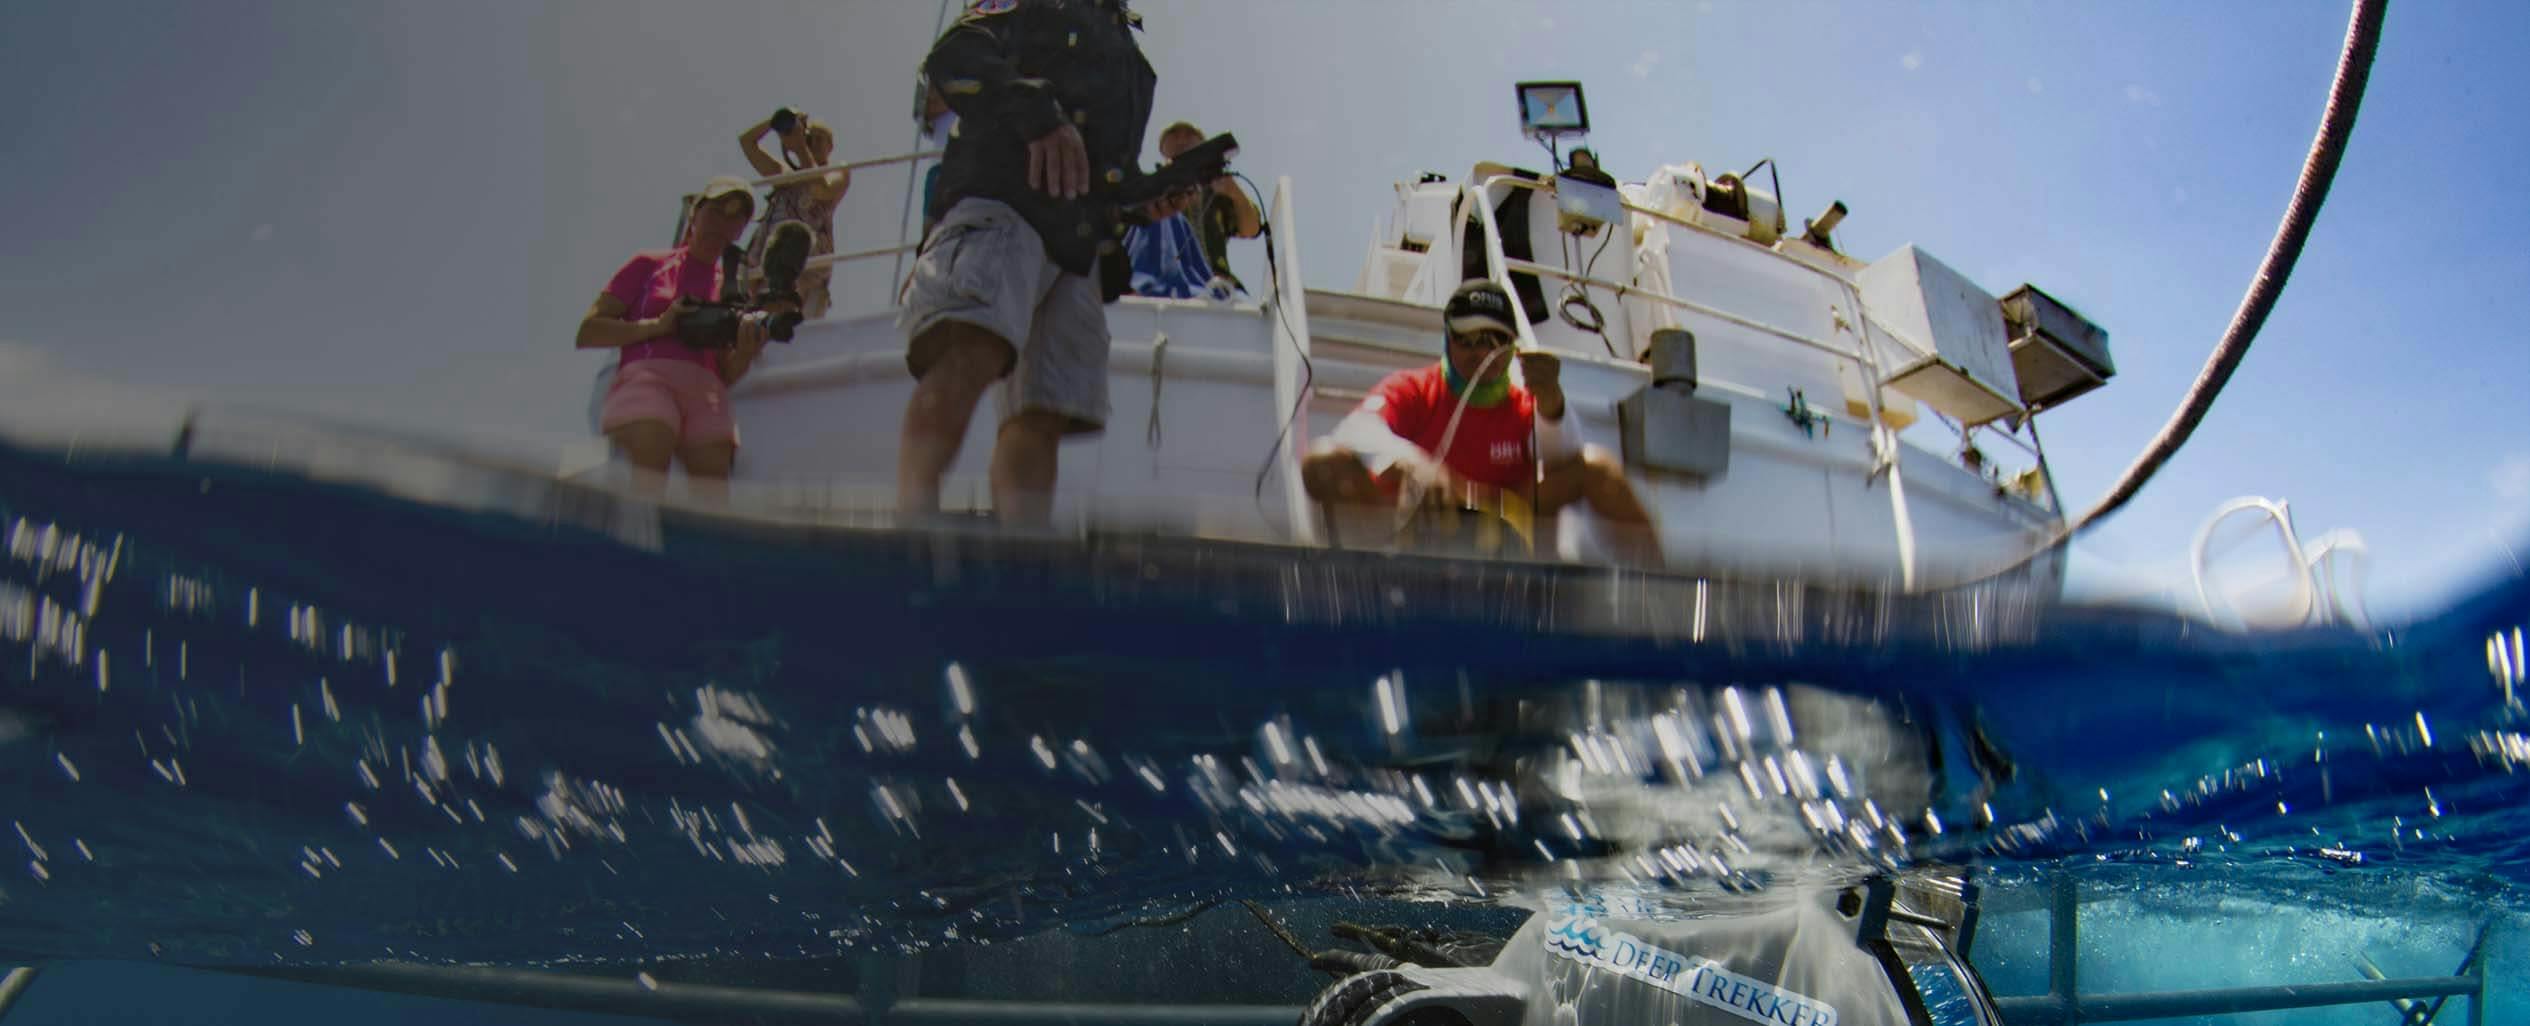 Underwater view of 3 people on white boat throwing a Deep Trekker DTG3 ROV underwater